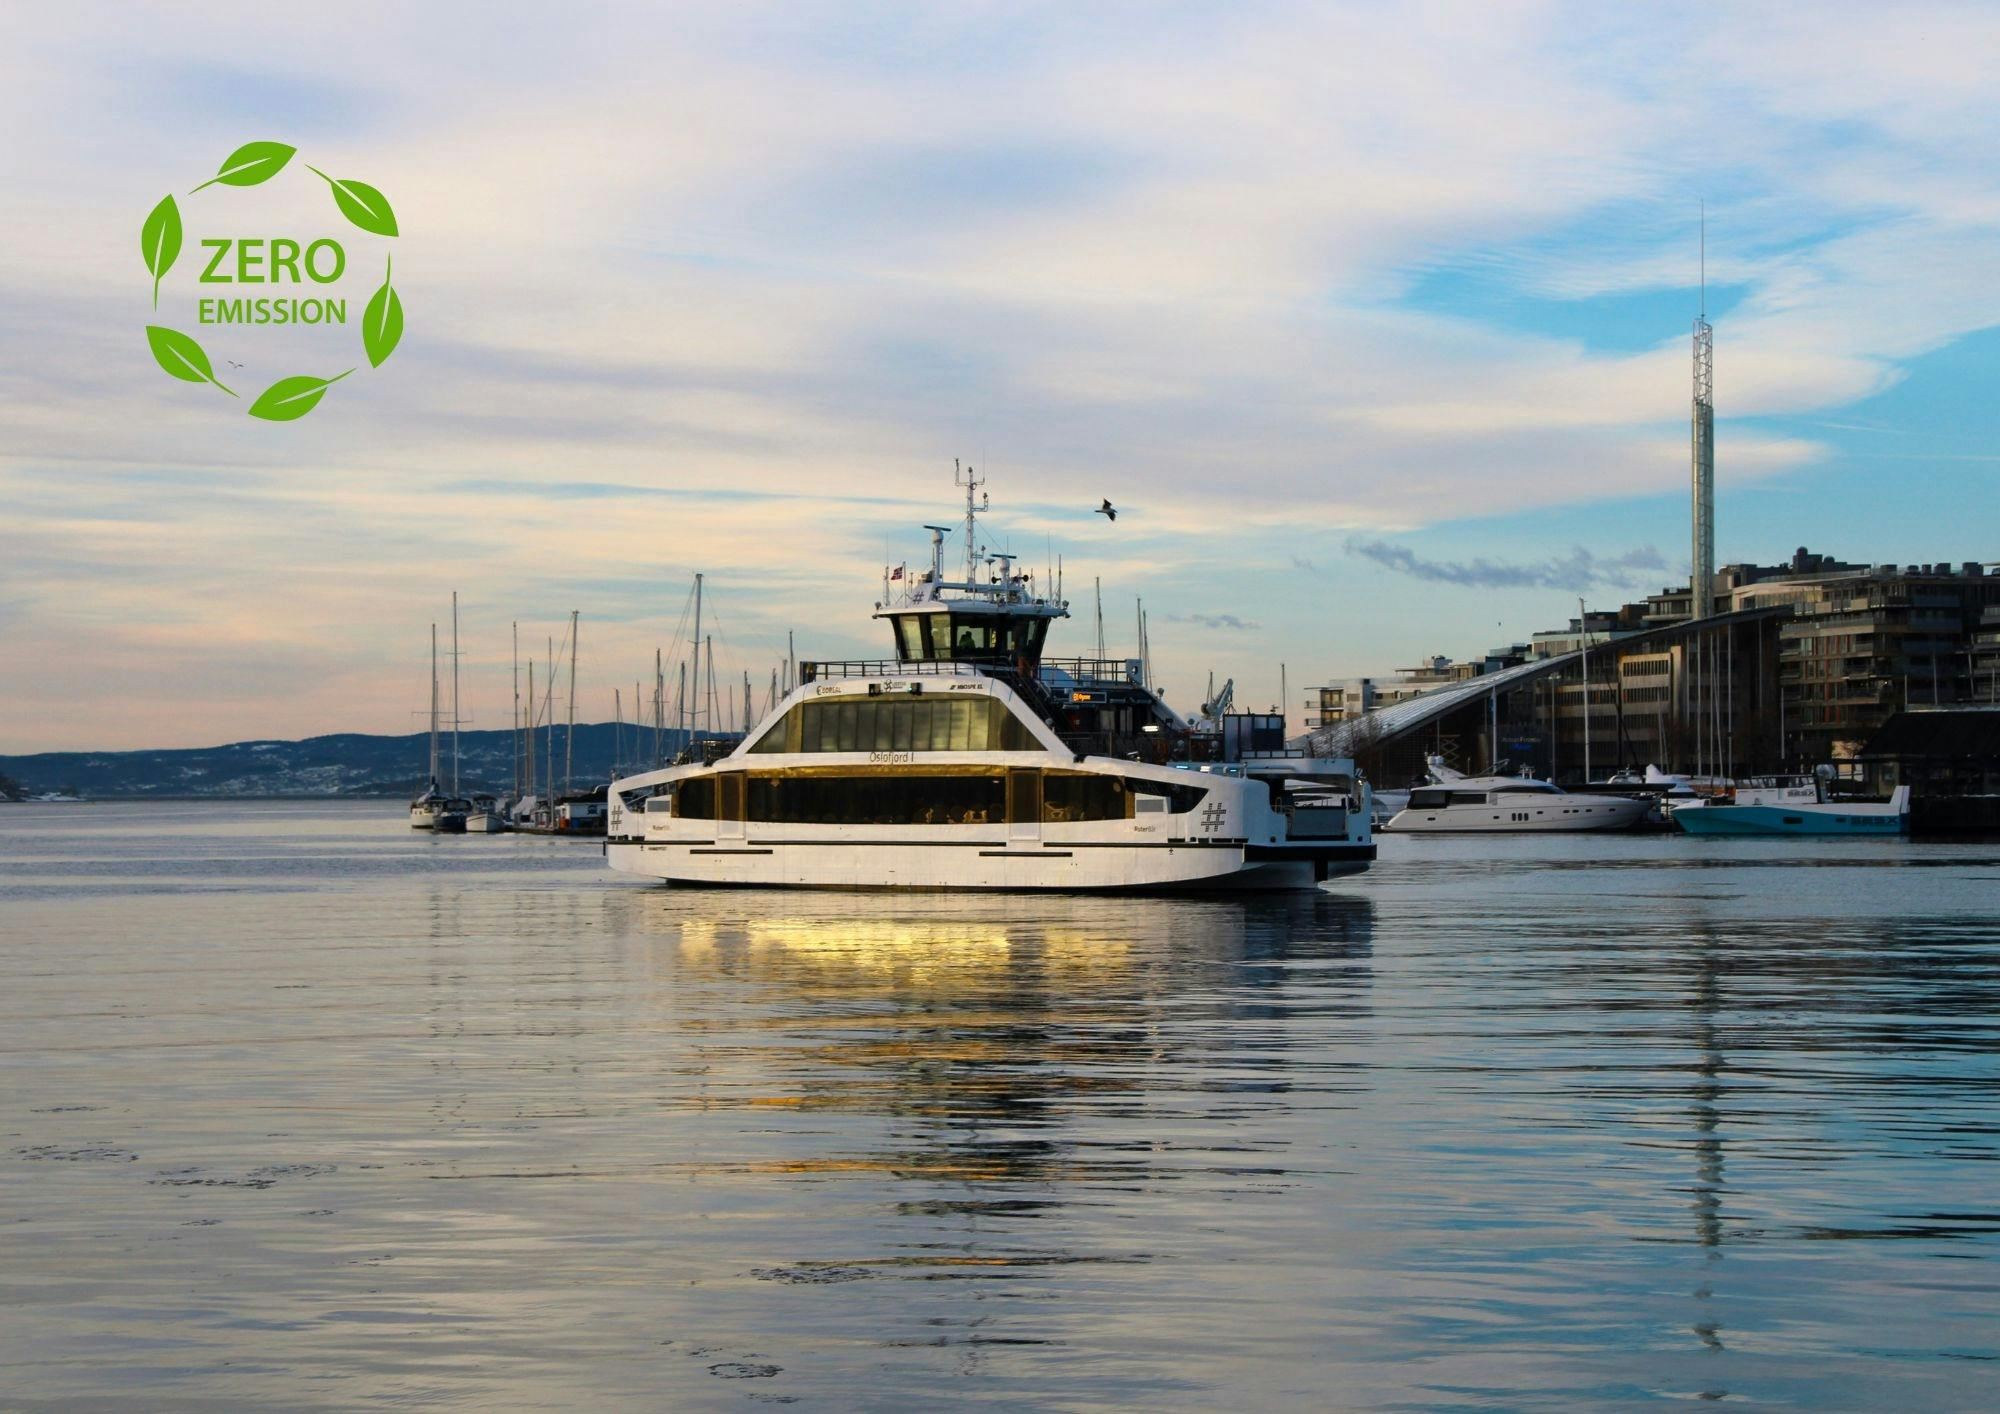 Audiogeführte Besichtigungstour mit dem Elektroboot zum Oslo-Fjord